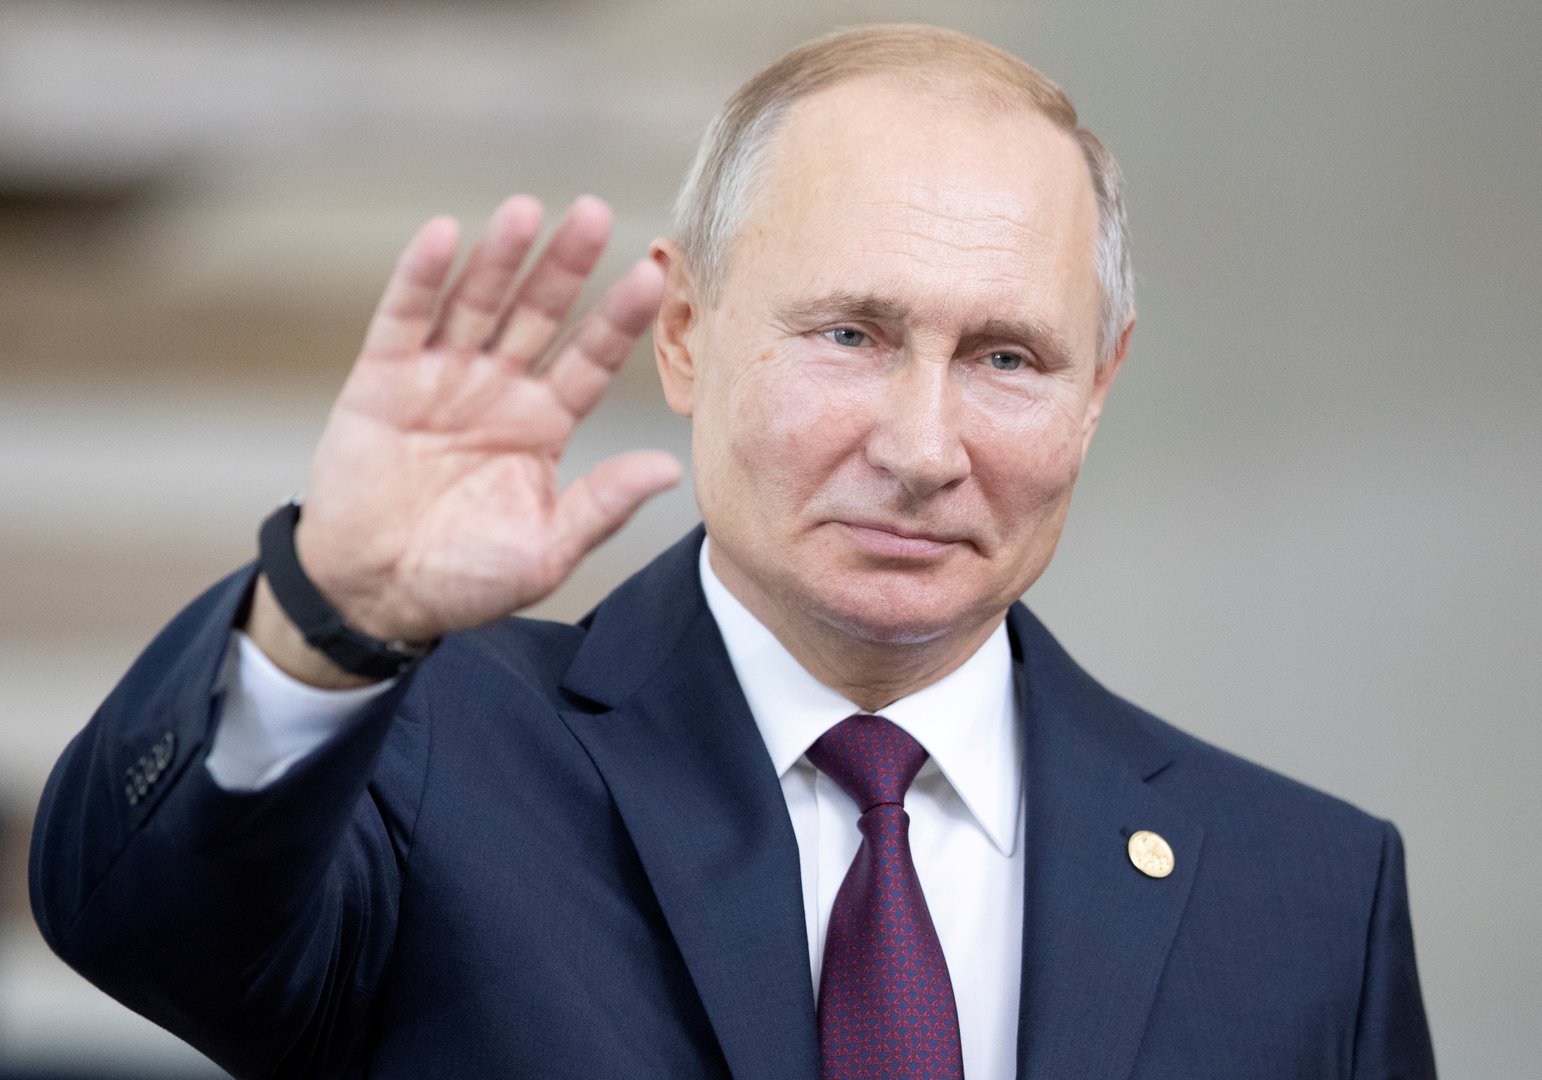 بوتين يوقع قانون موازنة روسيا لعام 2020 وفترة التخطيط لعامي 2021-2022